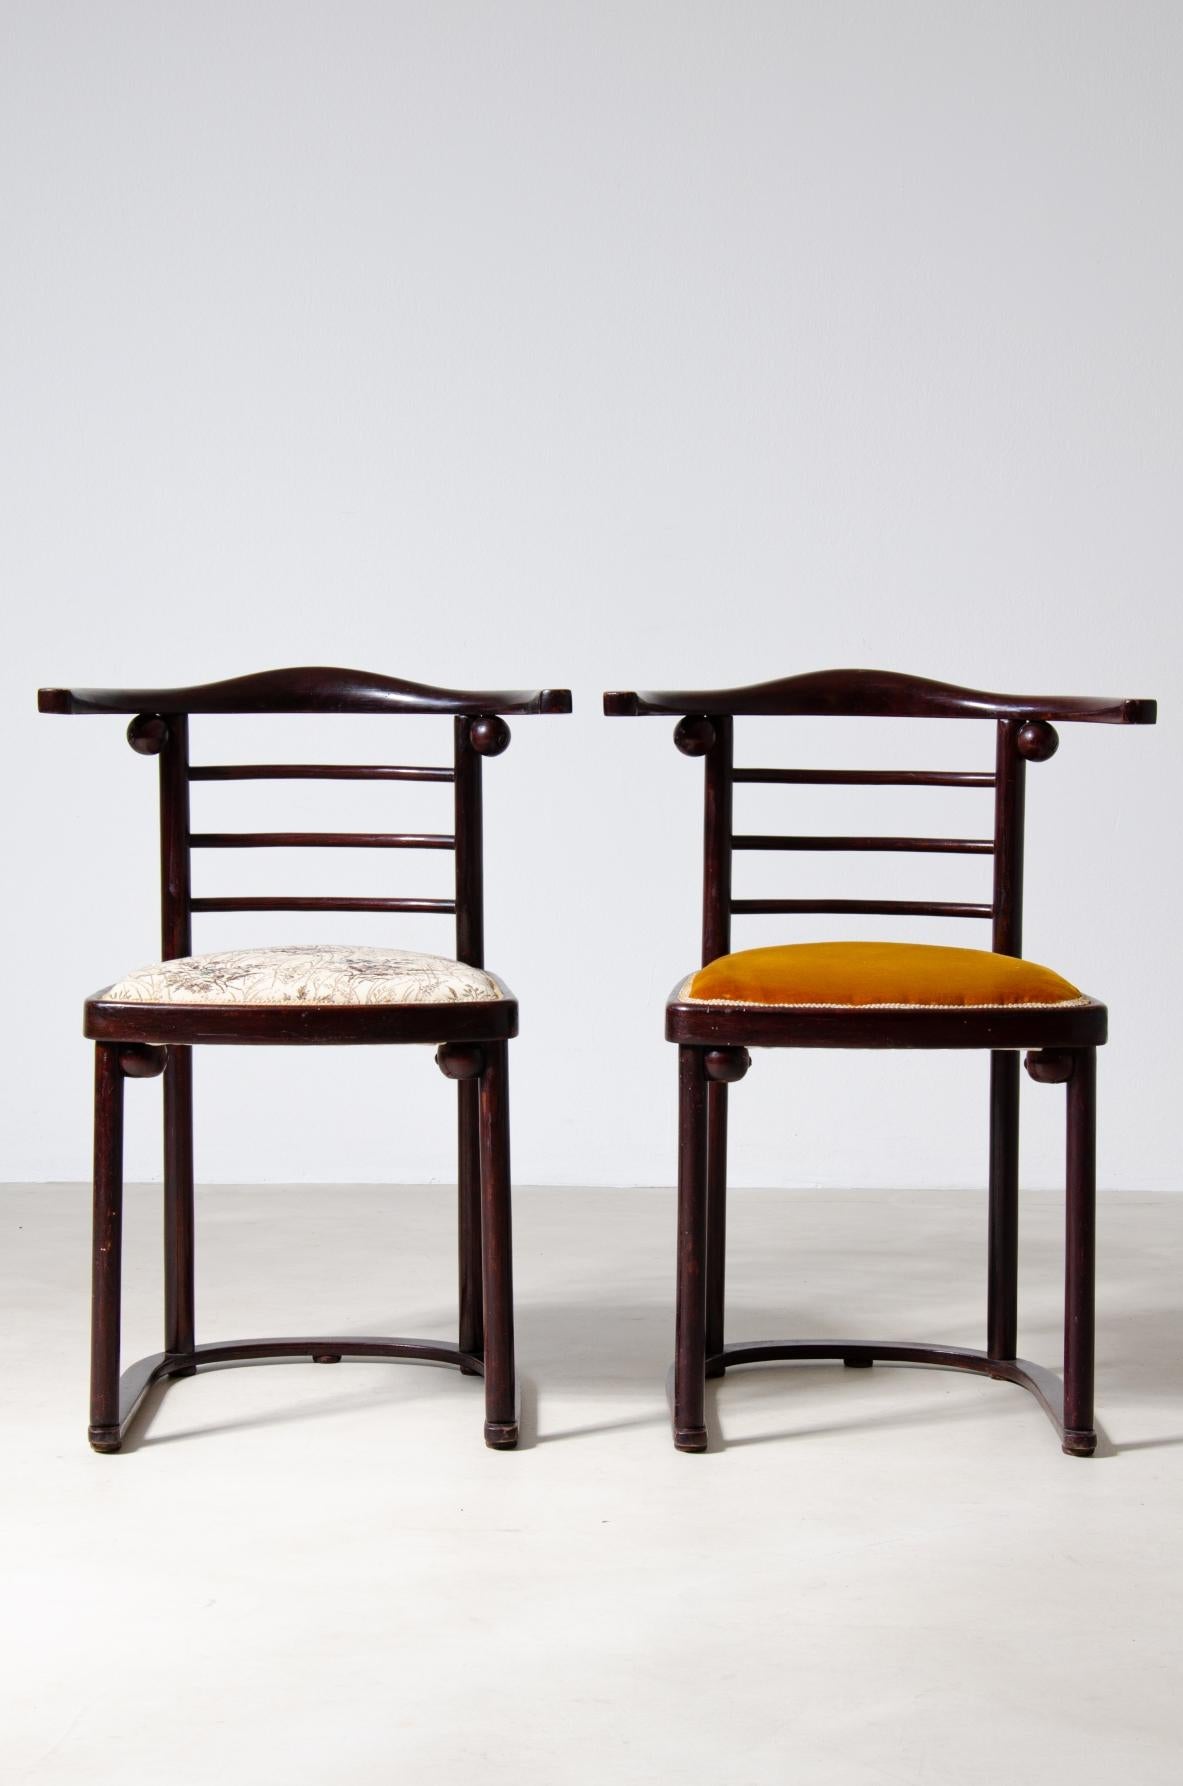 COD-2072
Josef Hoffmann (1870-1956)

Seltener Satz von vier Stühlen in geschwungenem poliertem Holz und gepolstertem Sitz.

Hergestellt von JJ.Kohn, Wien, 1907.

42x42xh46/75